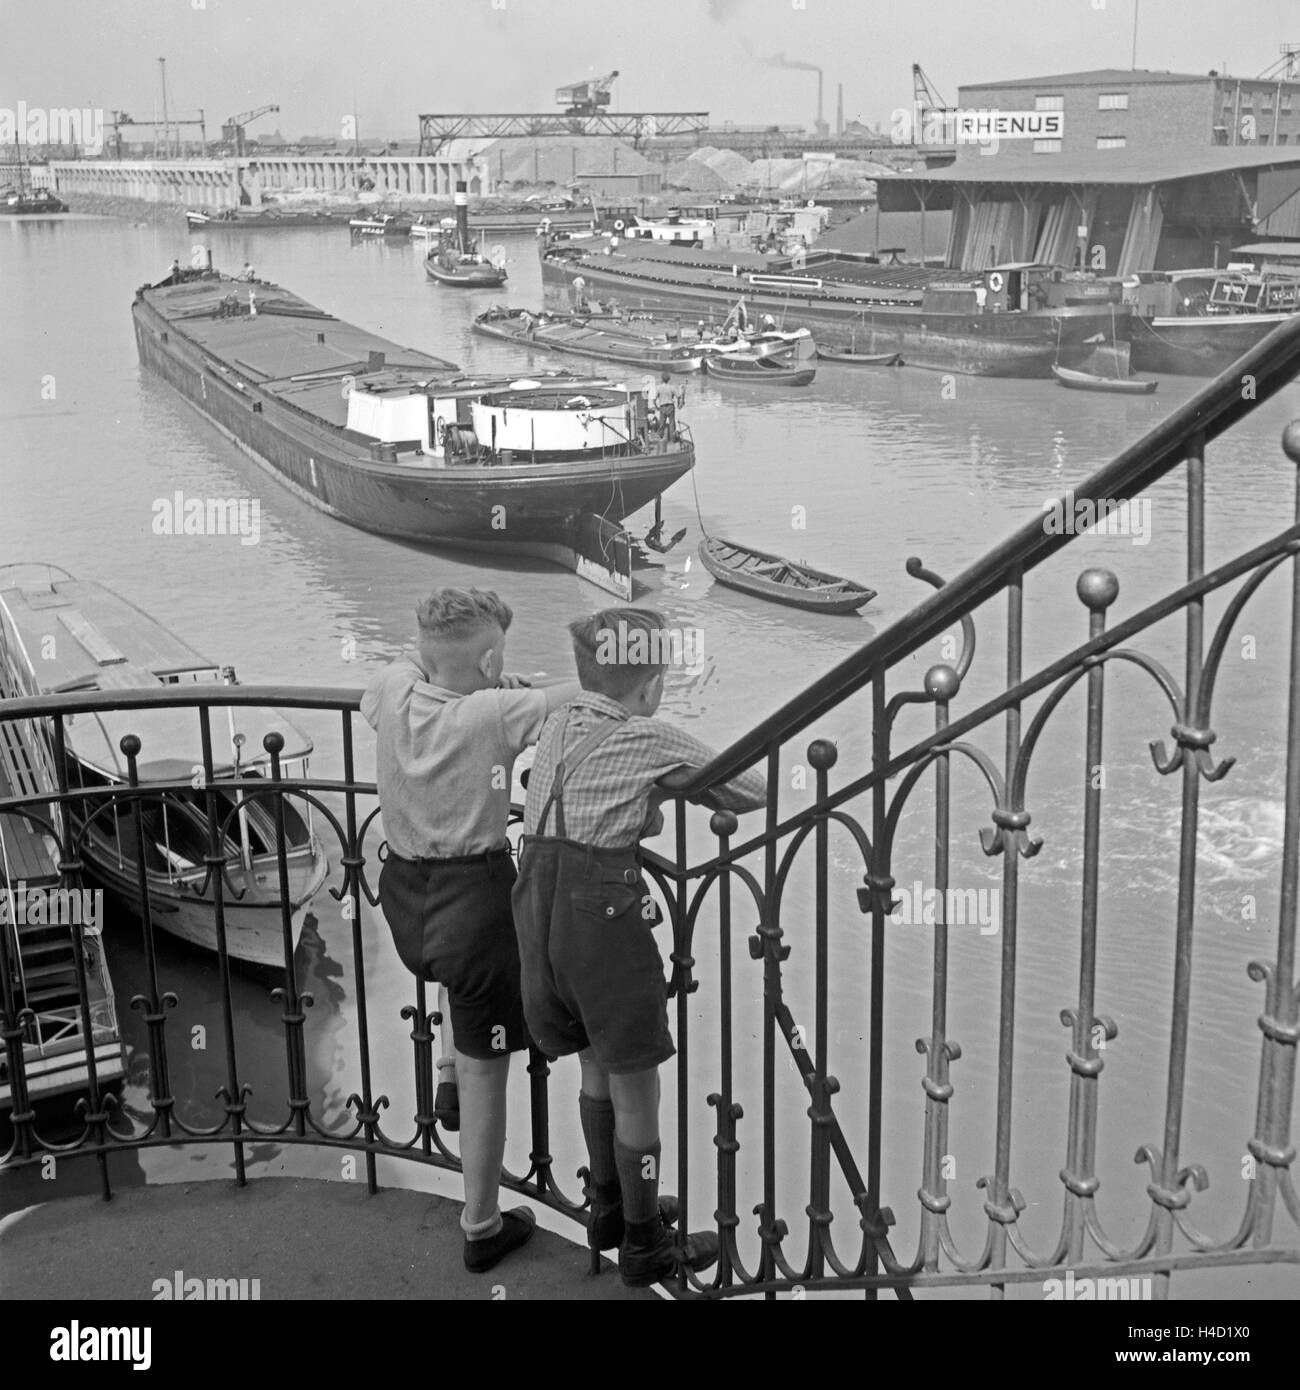 Zwei Kleine Jungen Schauen von Einem Treppengeländer Auf Den Hafen von Dortmund, Deutschland, 1930er Jahre. Zwei kleine Jungs beobachten Dortmund Hafen von einem Geländer Schiene, Deutschland der 1930er Jahre. Stockfoto